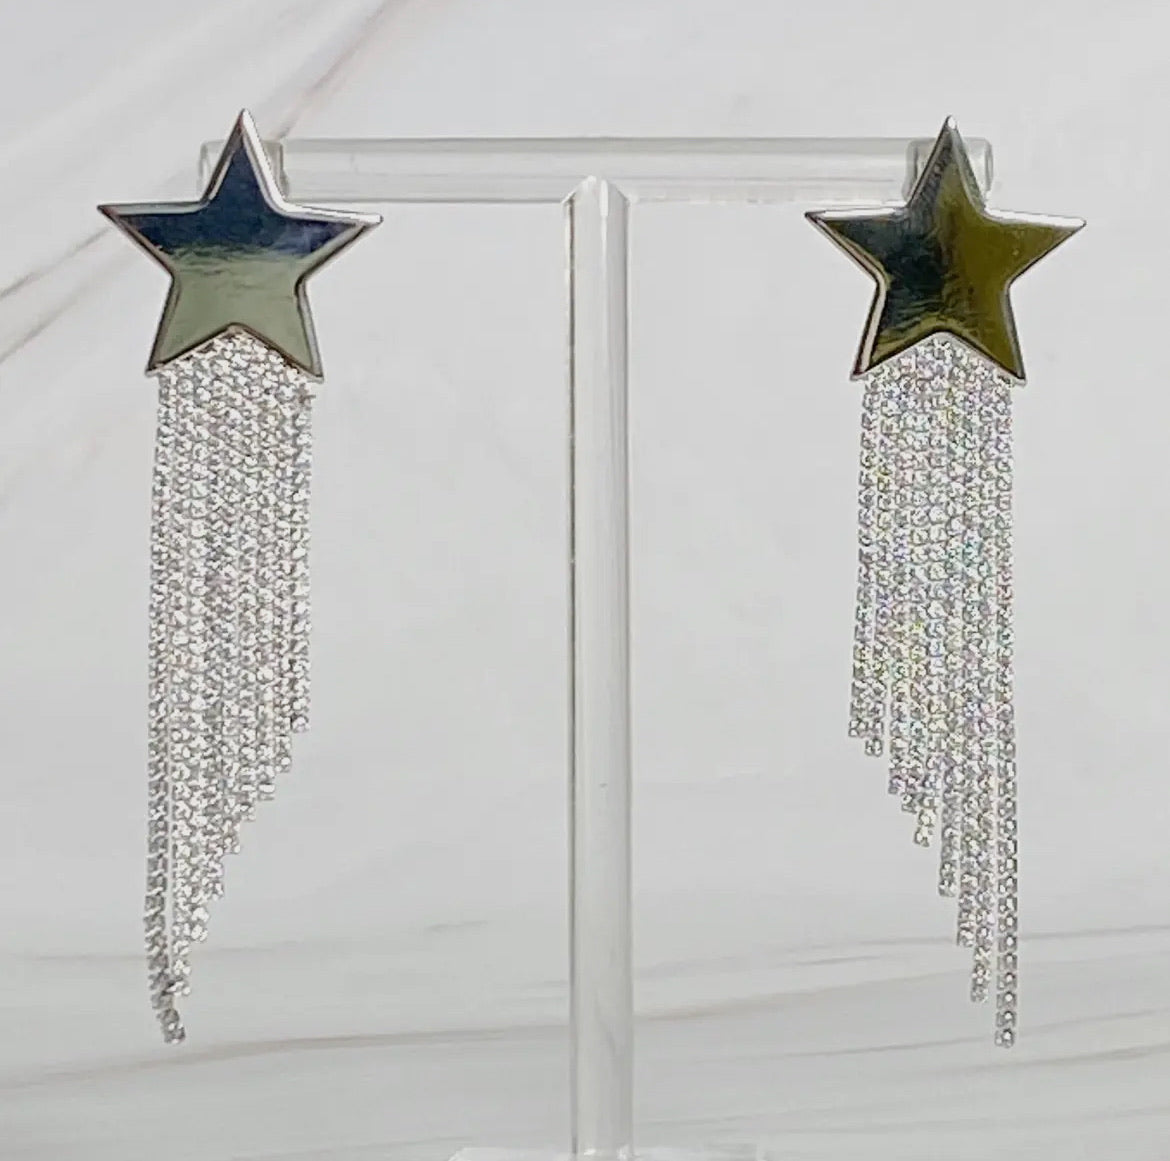 Shining Star earrings